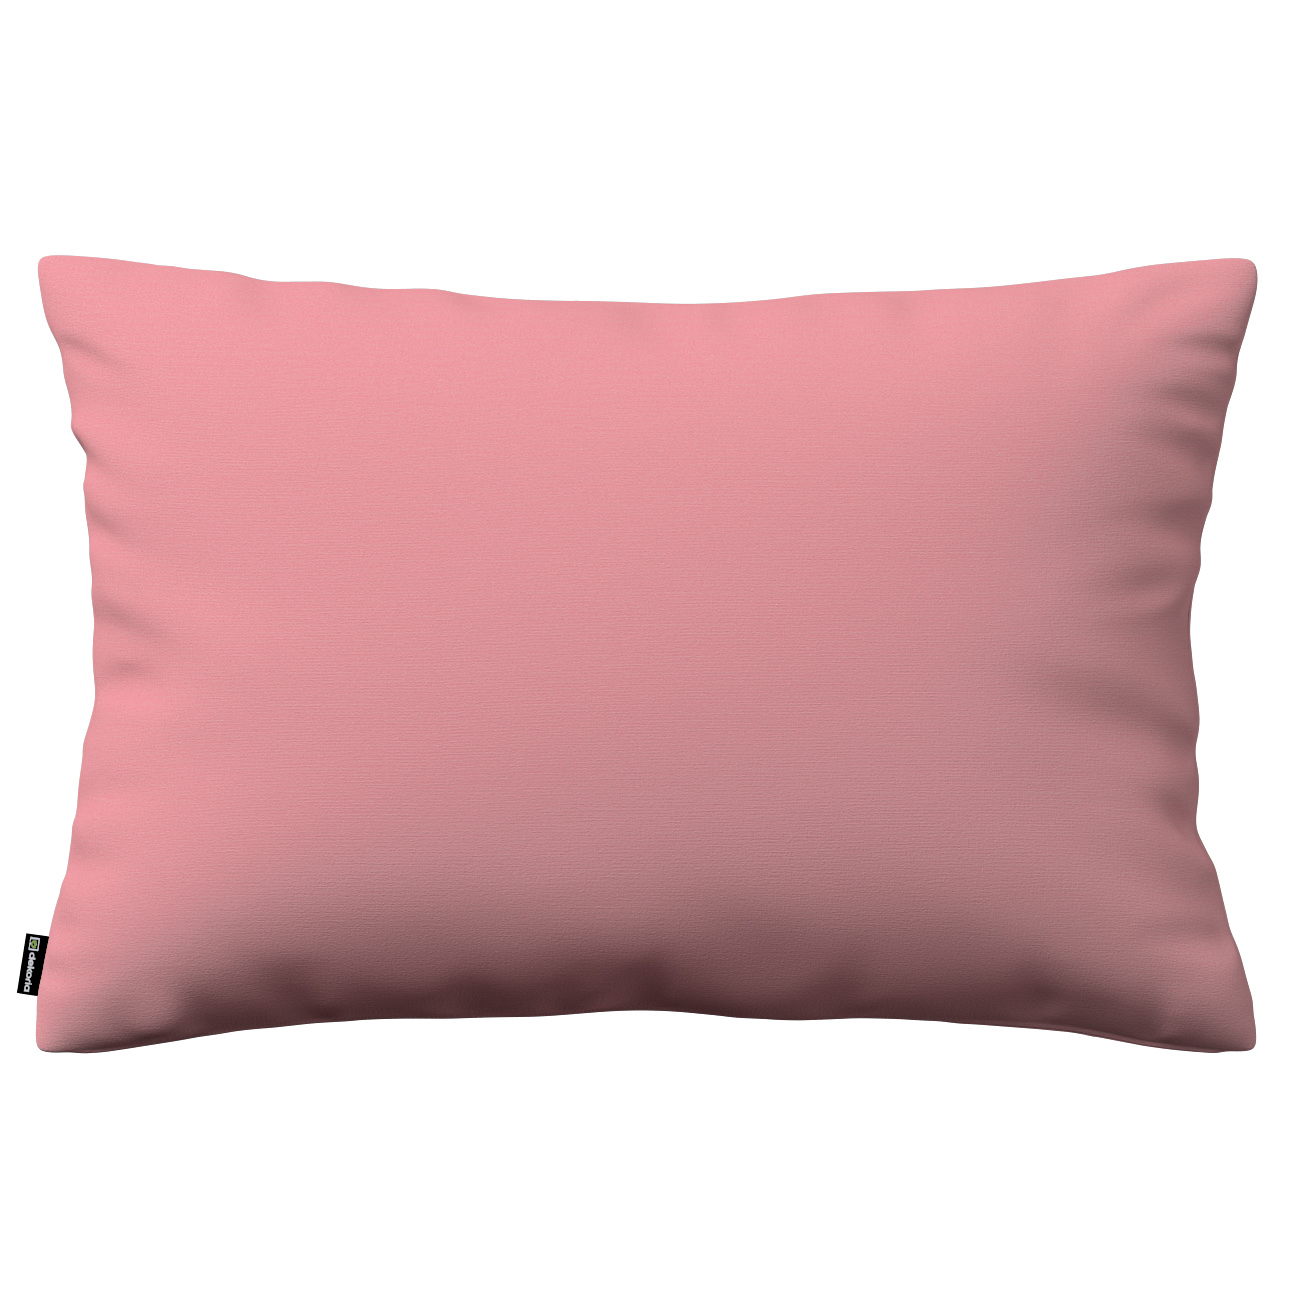 Kissenhülle Kinga rechteckig, rosa, 47 x 28 cm, Loneta (133-62) günstig online kaufen